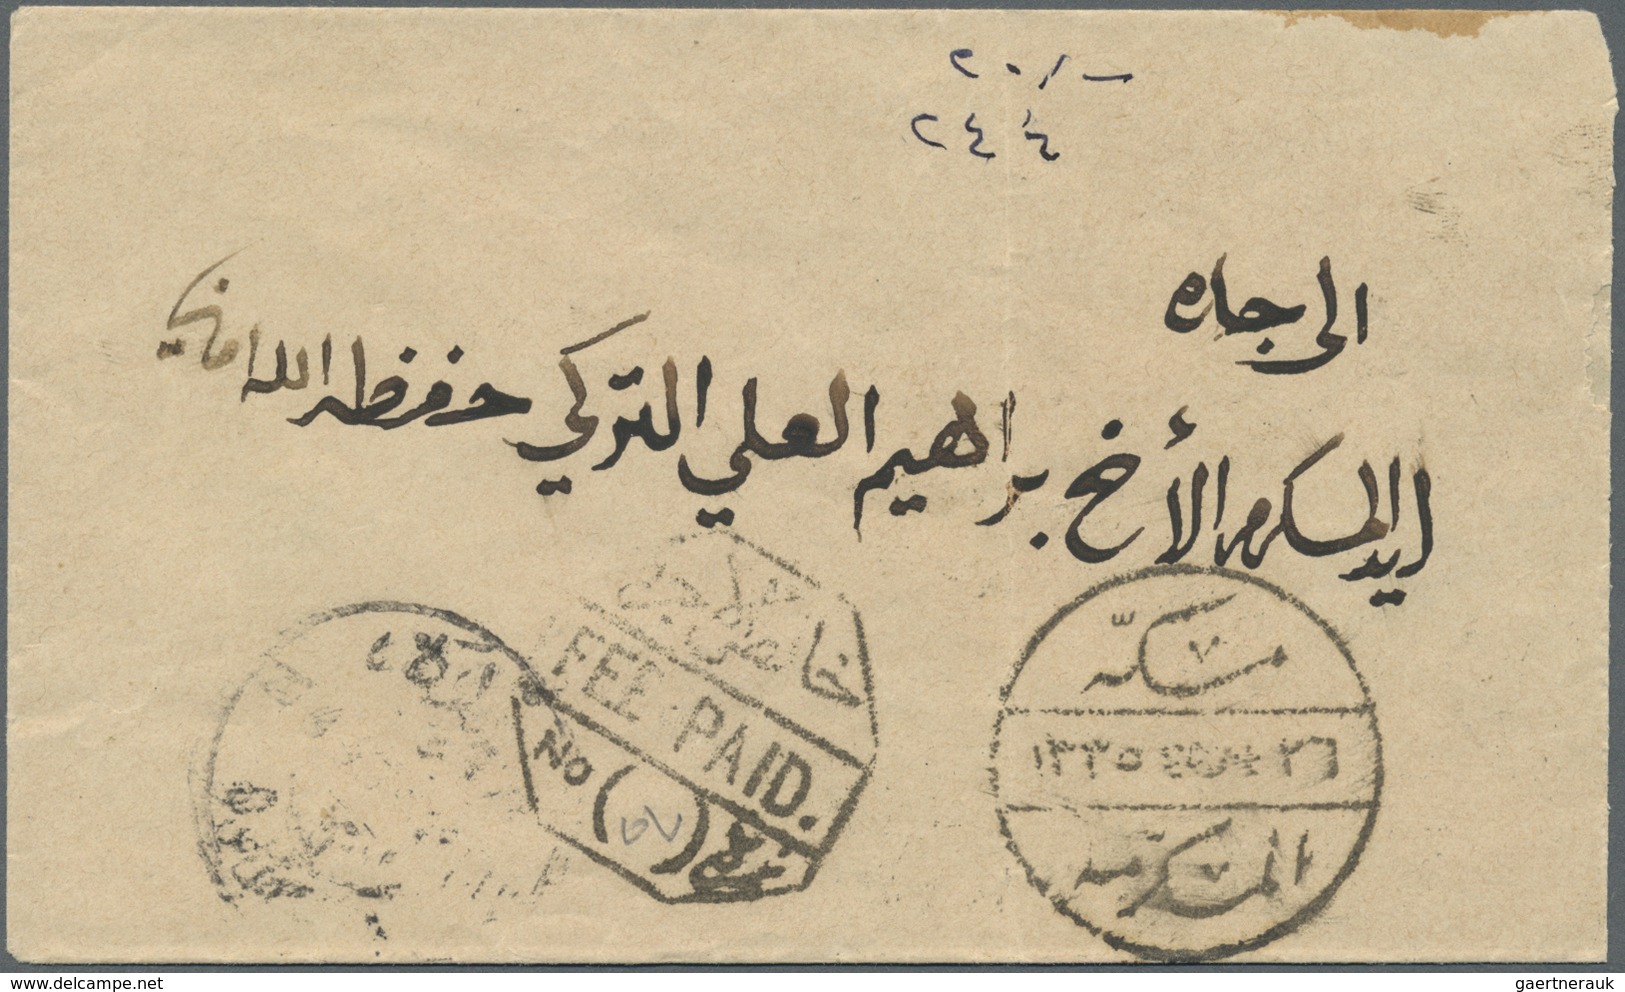 Br Saudi-Arabien - Stempel: 1916, Stampless Cover Tied By "MEKKE EL MUKEREME - 26/2/17- 1335" Cds. (Uex - Saudi Arabia